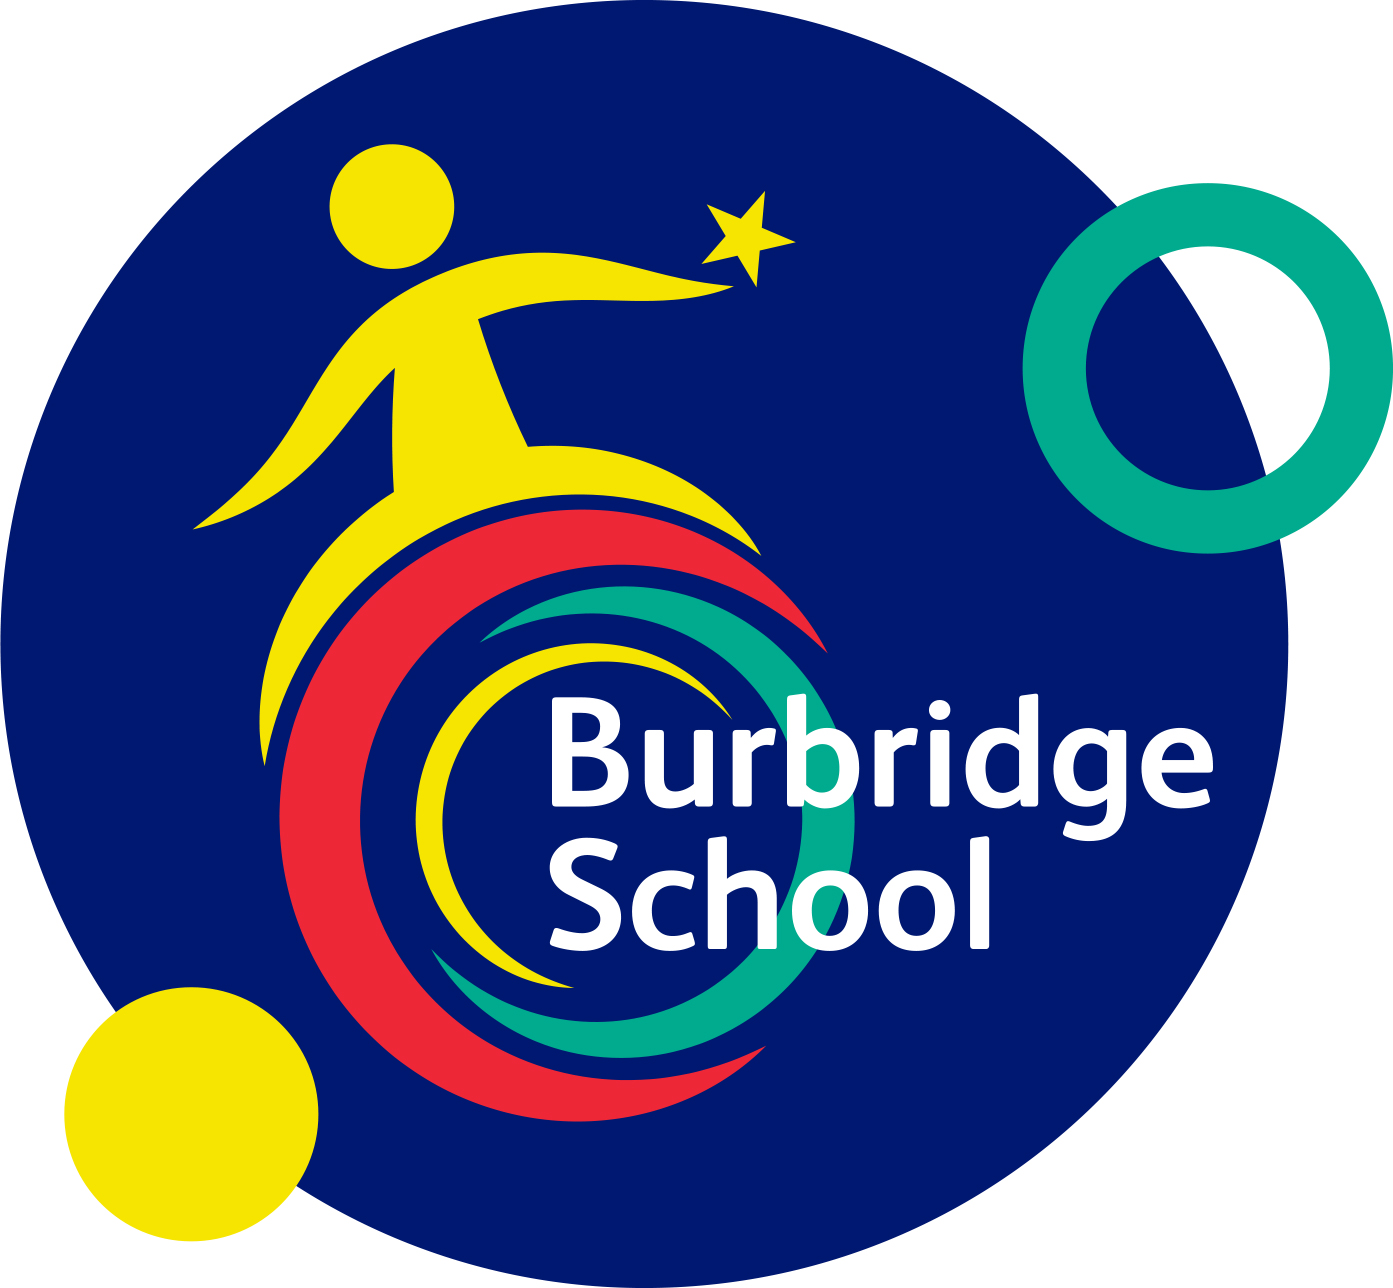 Burbridge School